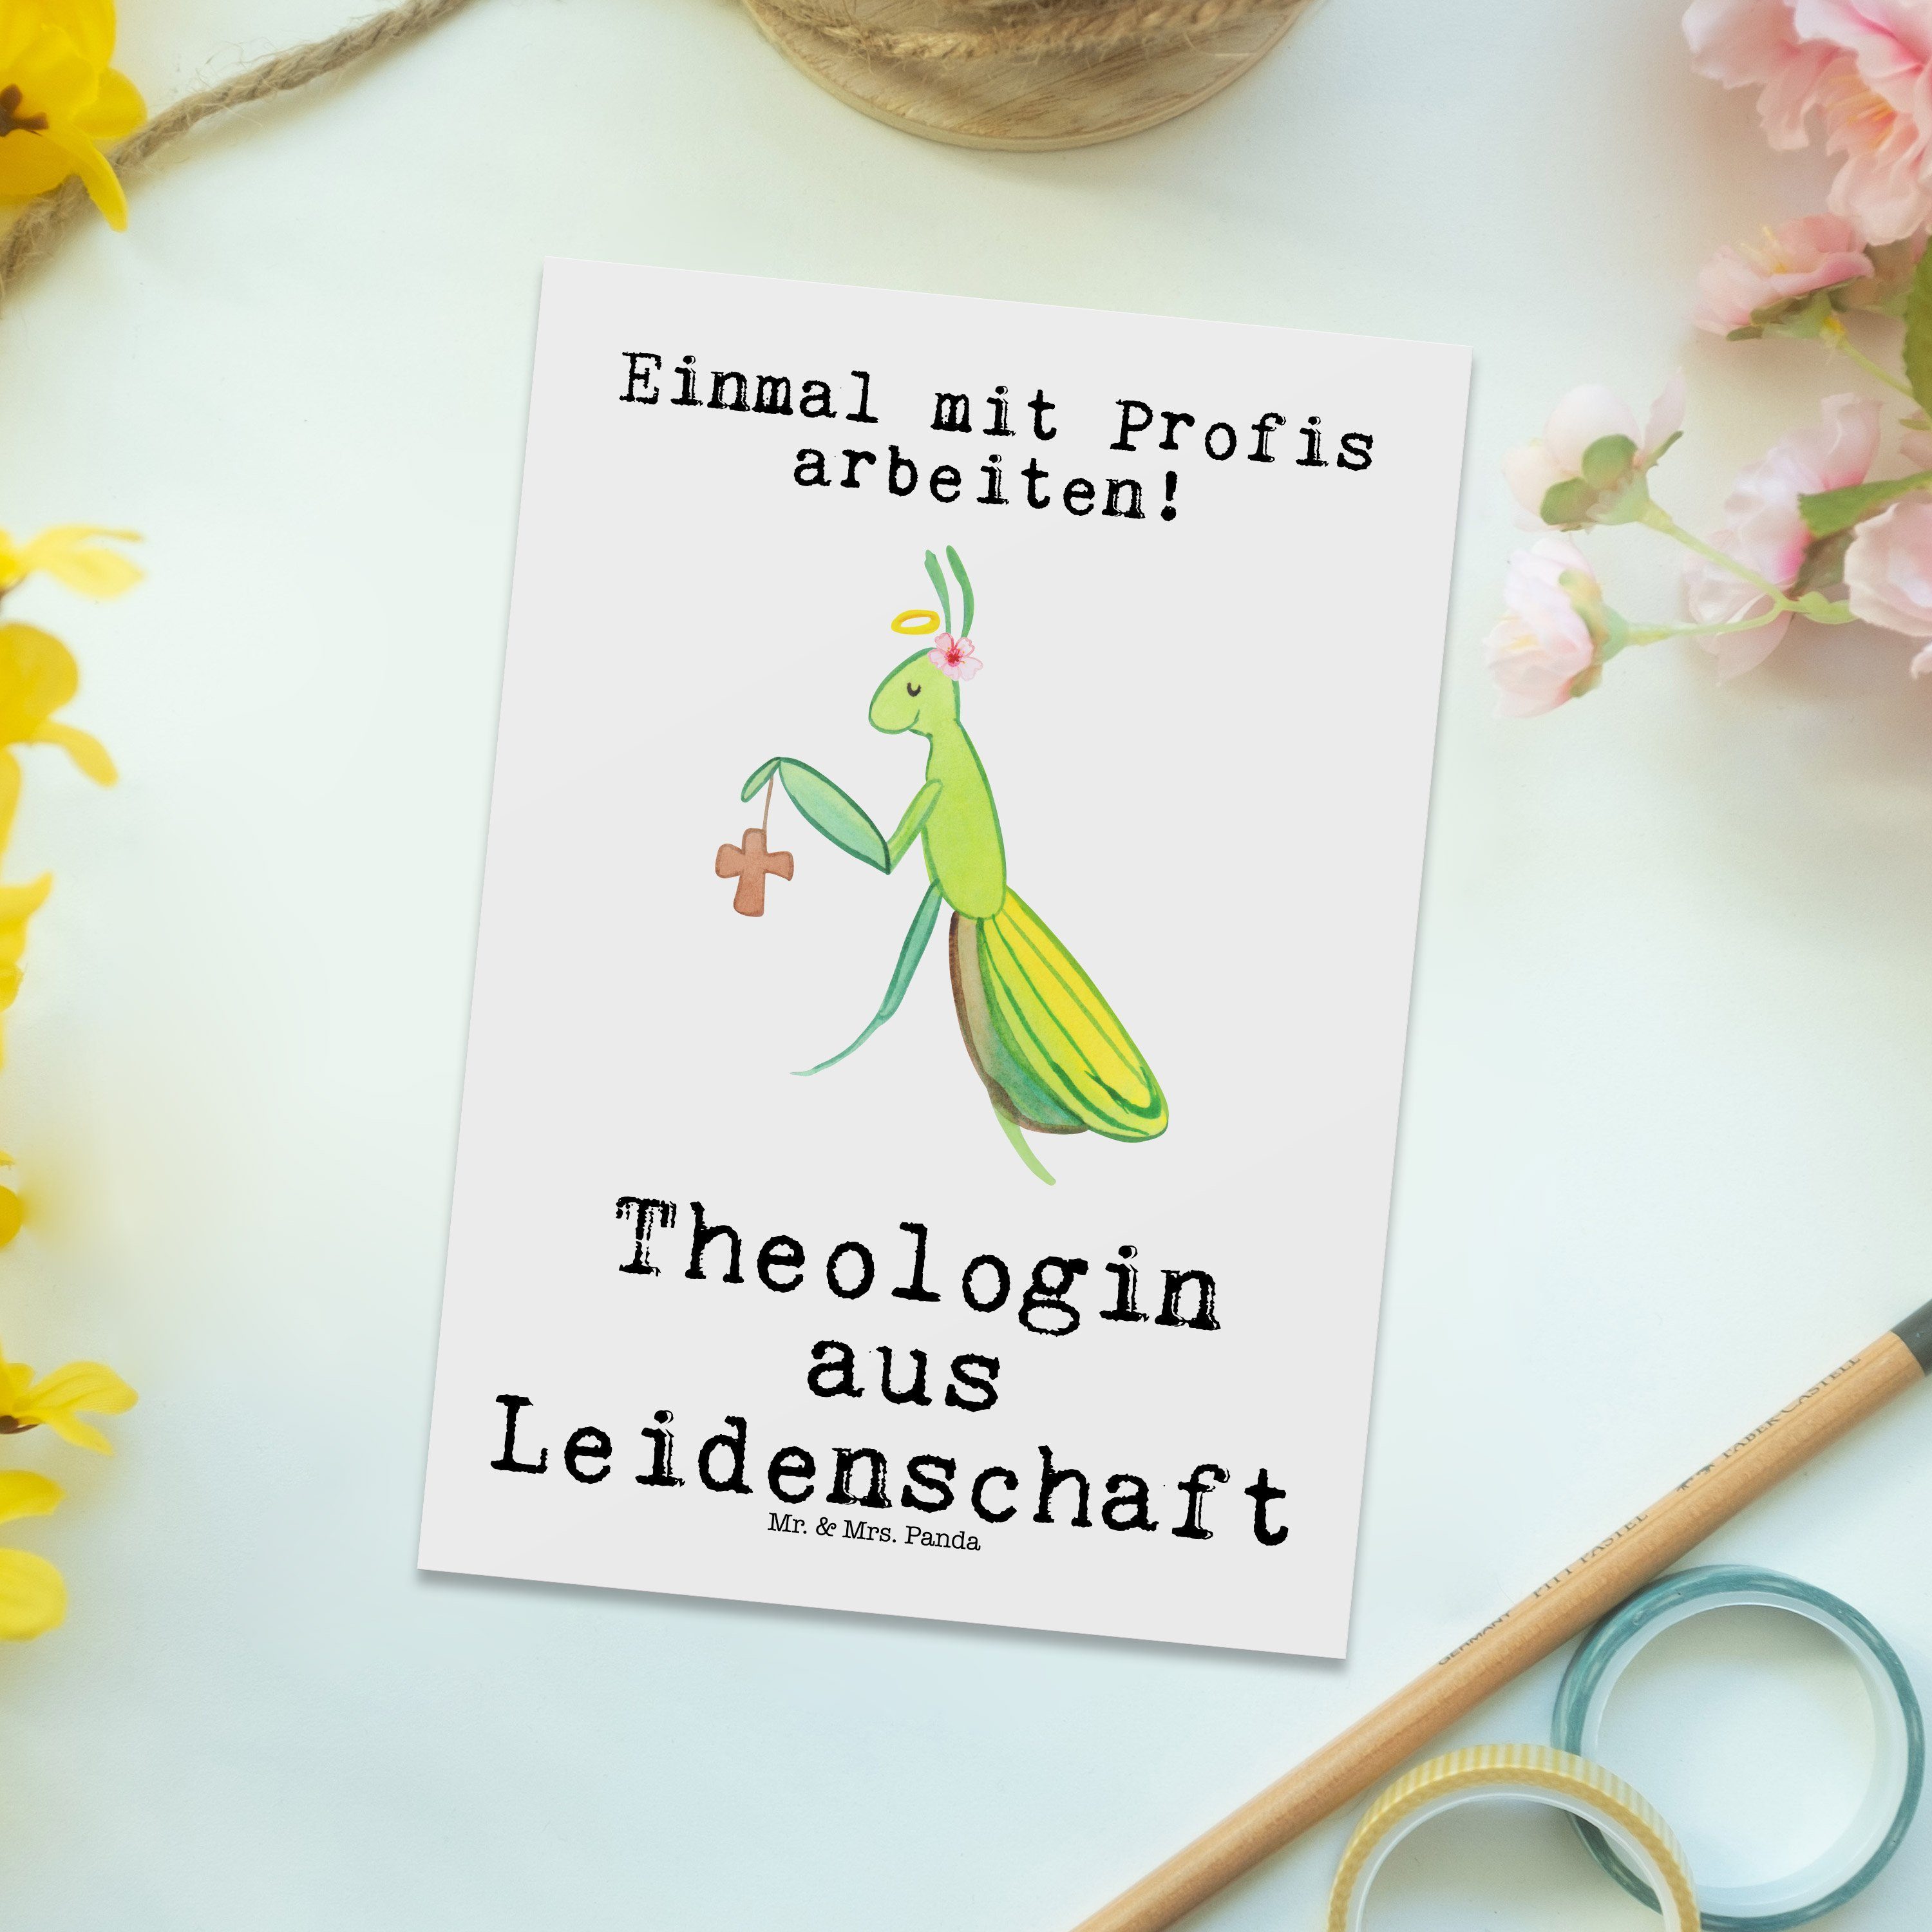 Panda Weiß & aus Dankeschö Leidenschaft Mrs. Geschenk, Karte, - Firma, Theologin - Mr. Postkarte